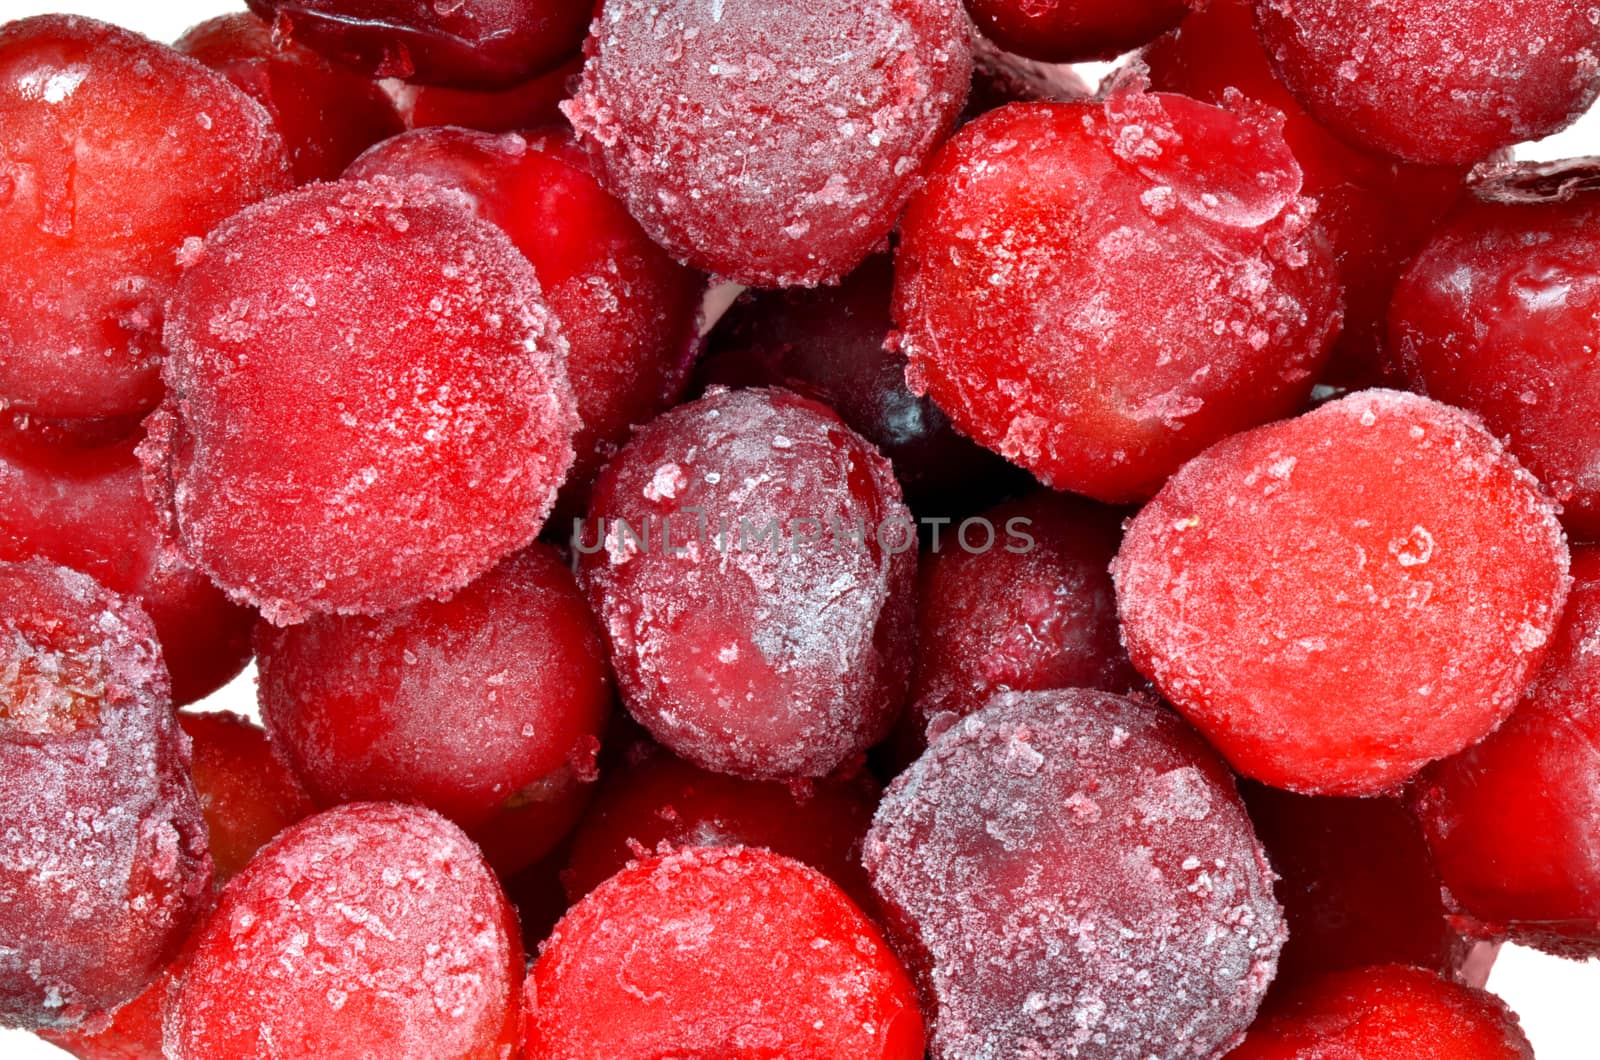 Frozen cherries by Vectorex